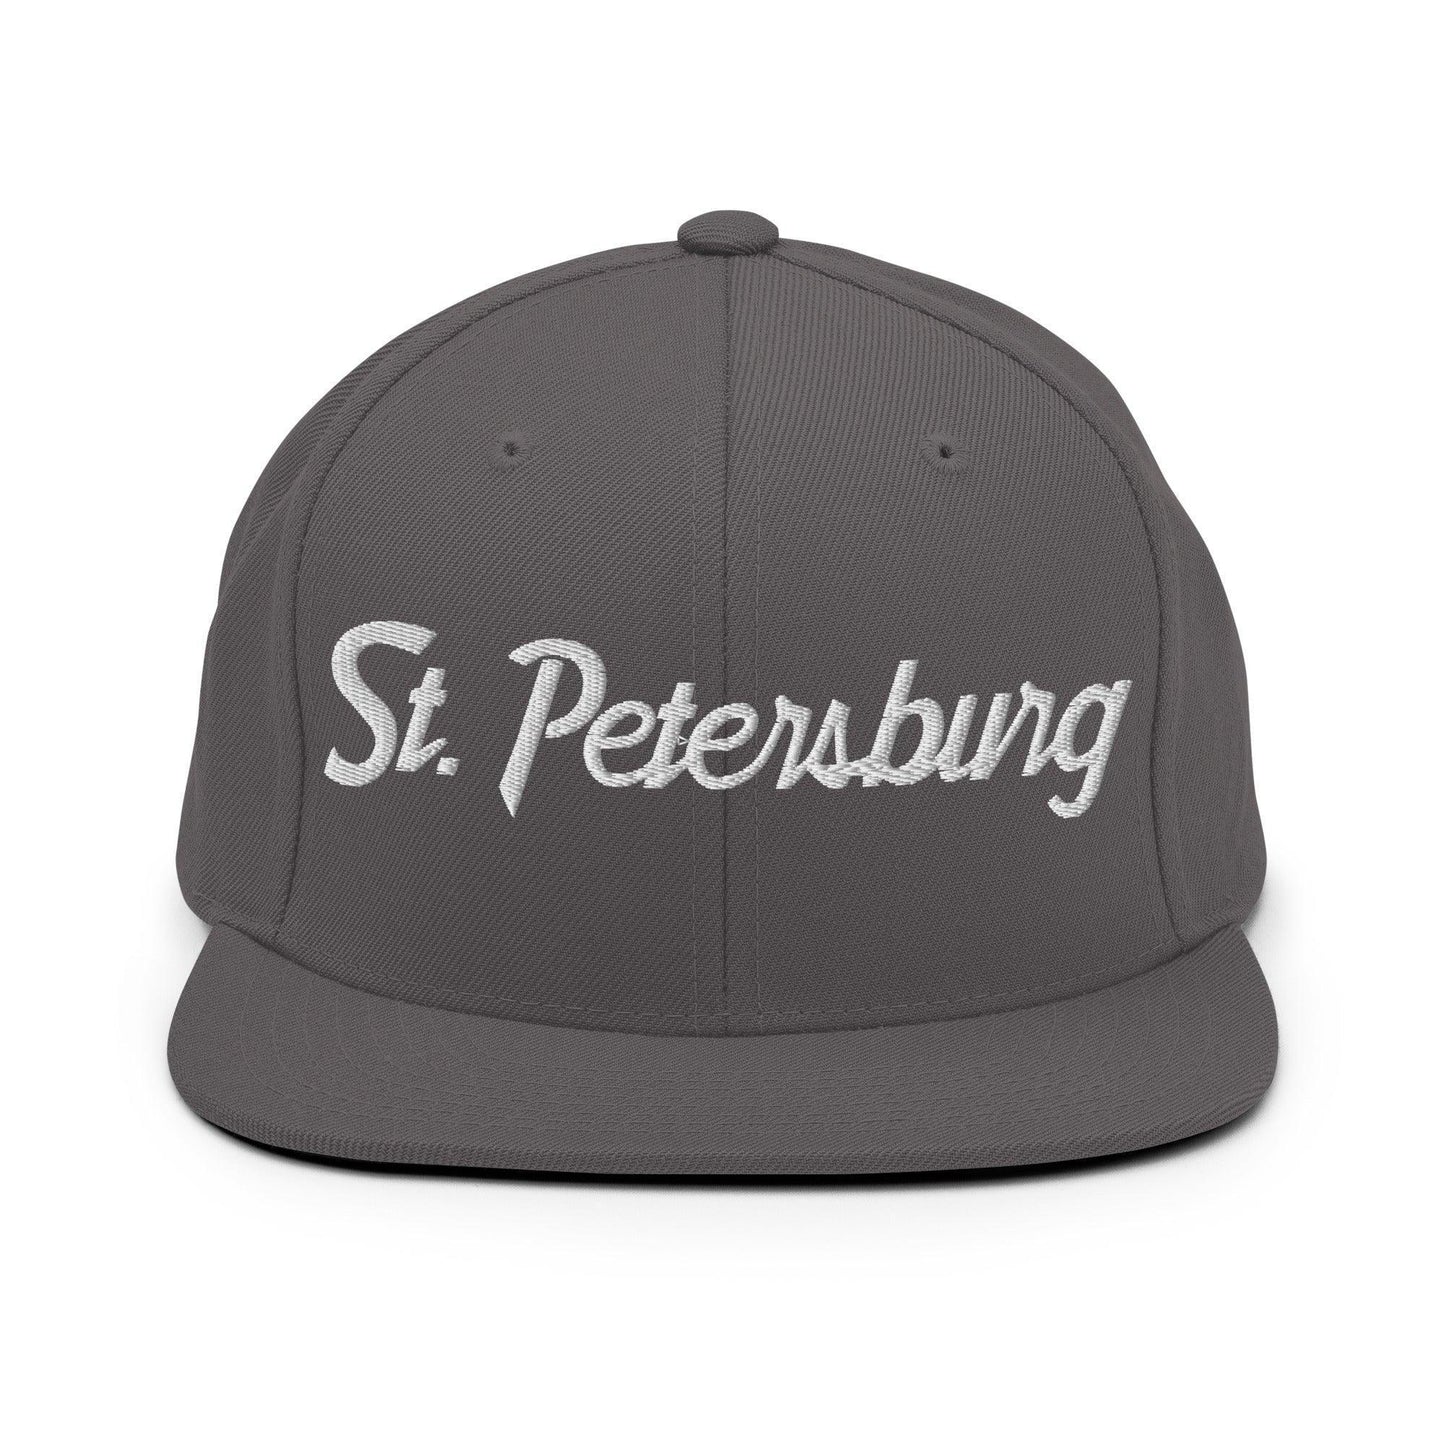 St. Petersburg Script Snapback Hat Dark Grey